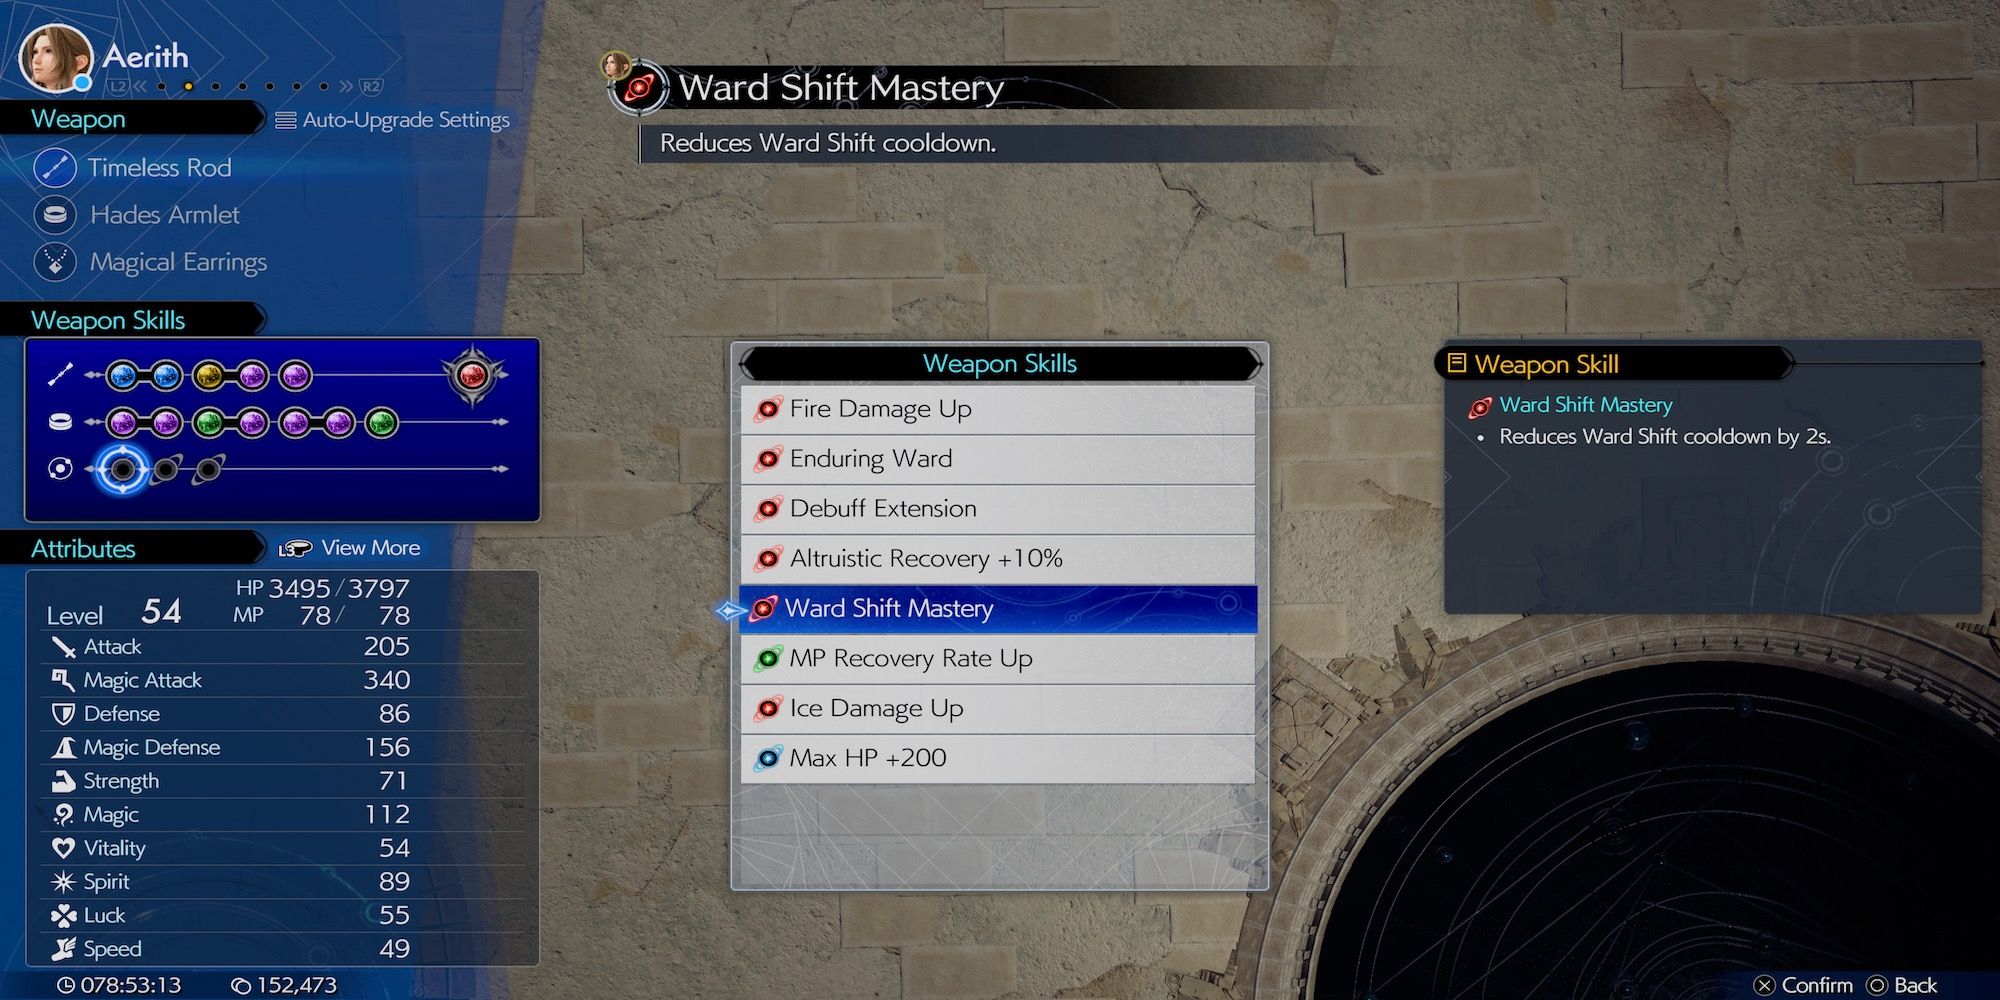 Ward Shift Mastery Aerith weapon skill in Final Fantasy 7 Rebirth